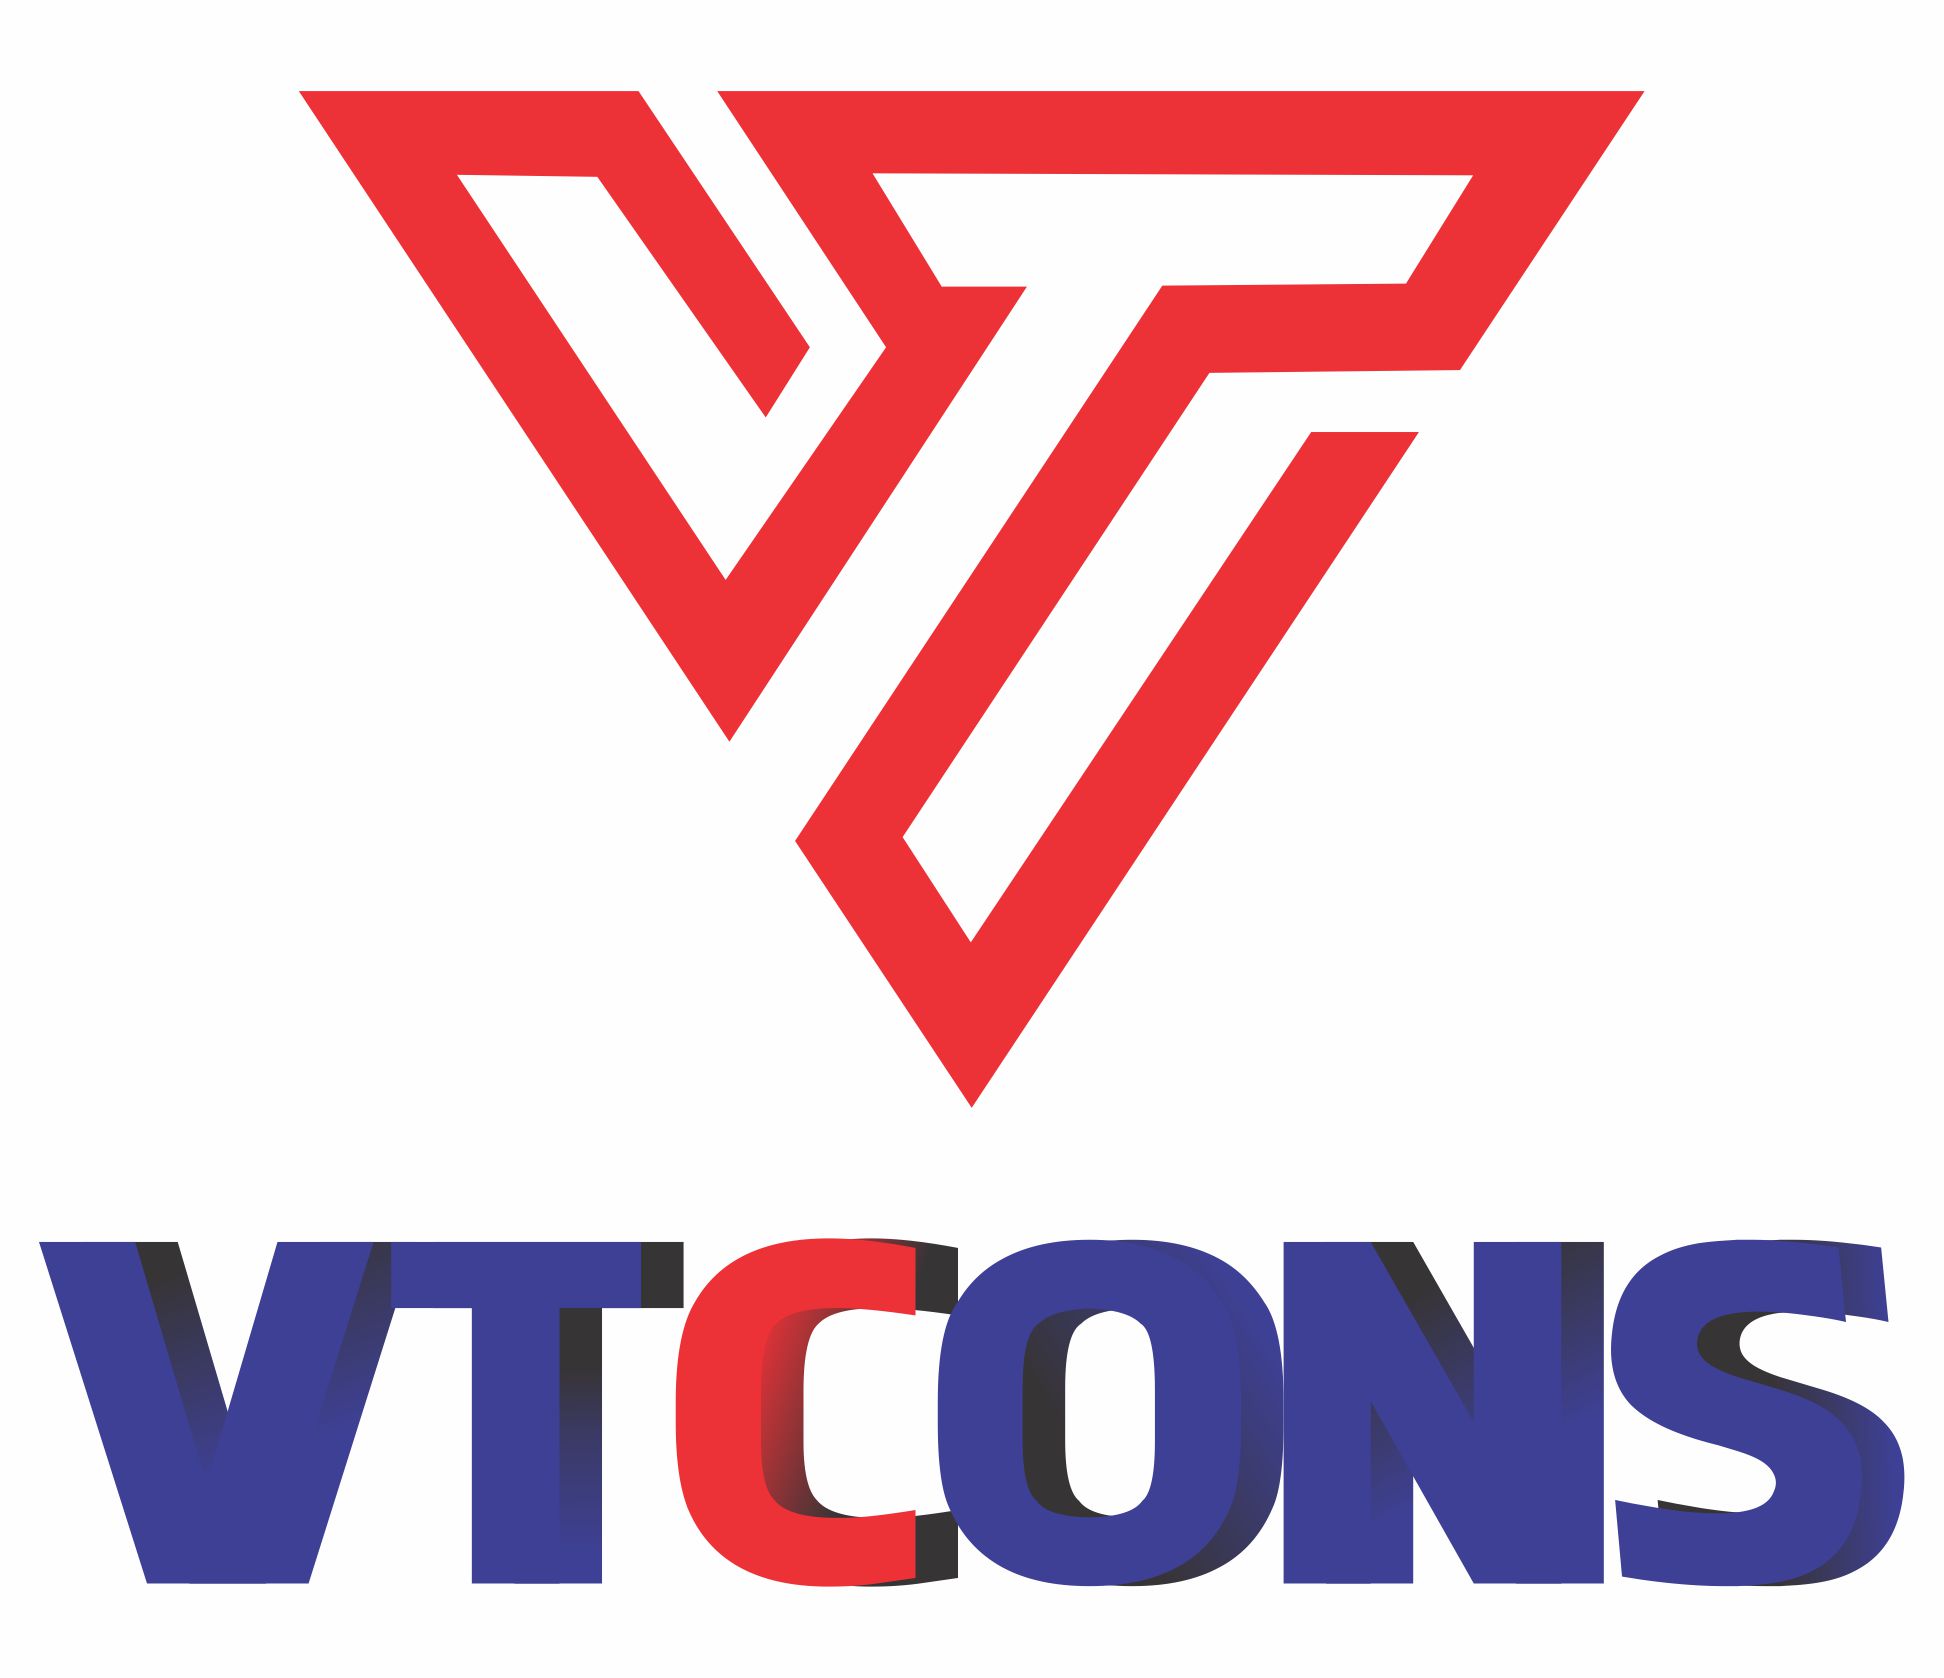  				VTCONS				